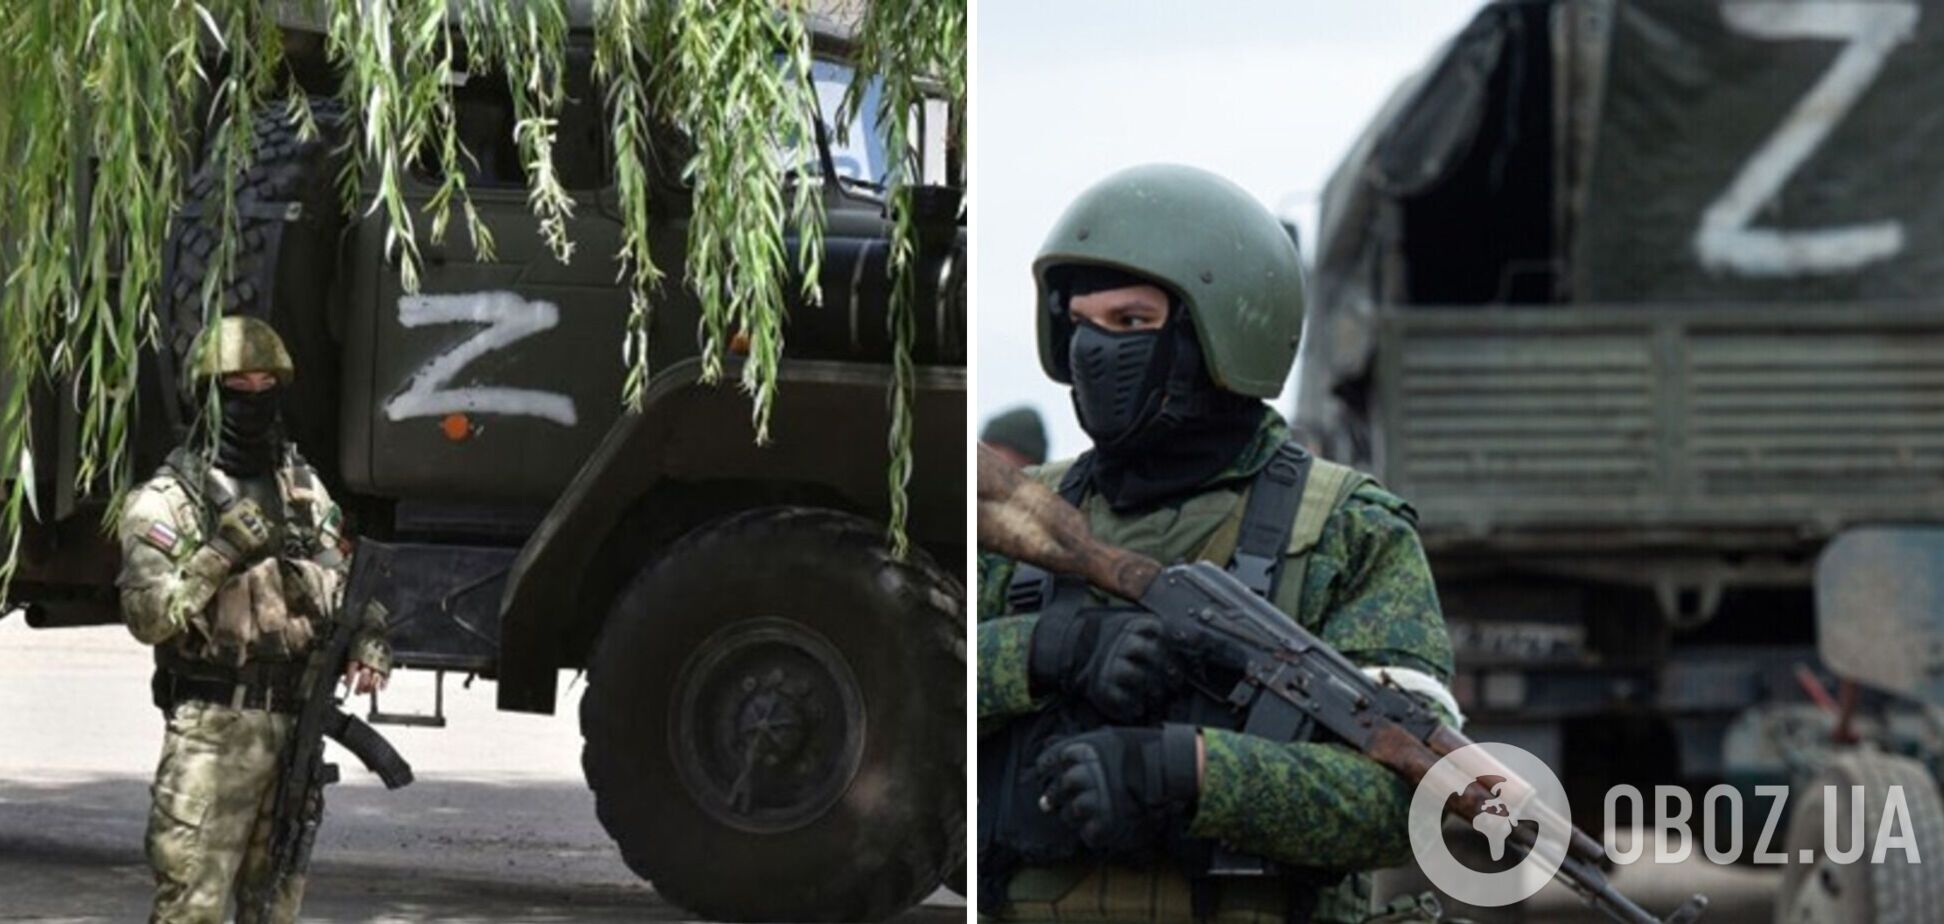 Військові РФ готують воєнний злочин на окупованих територіях 'під чужим прапором': мешканців попередили про небезпеку 